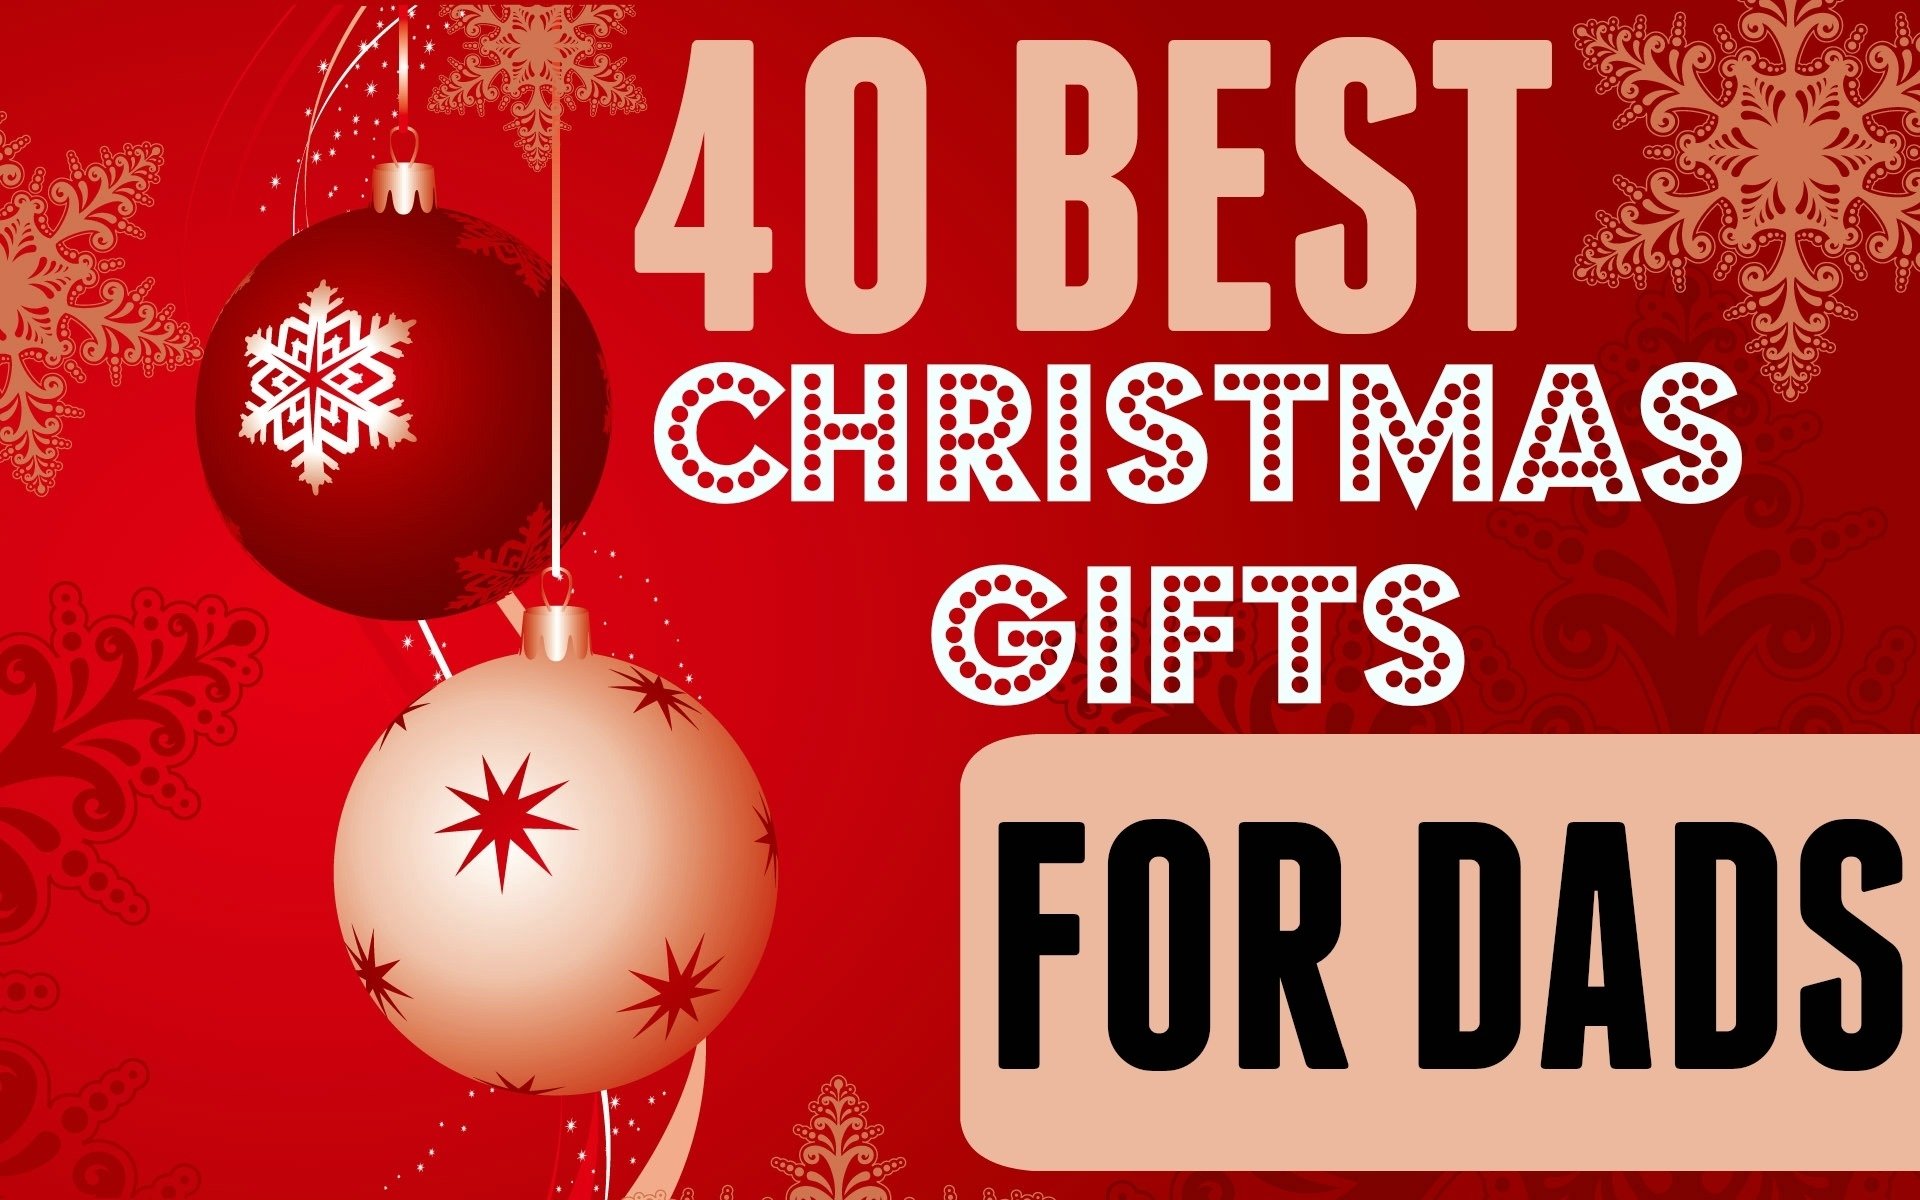 500+ Christmas Gift Ideas For Dad 2021 - Giftadvisor.Com